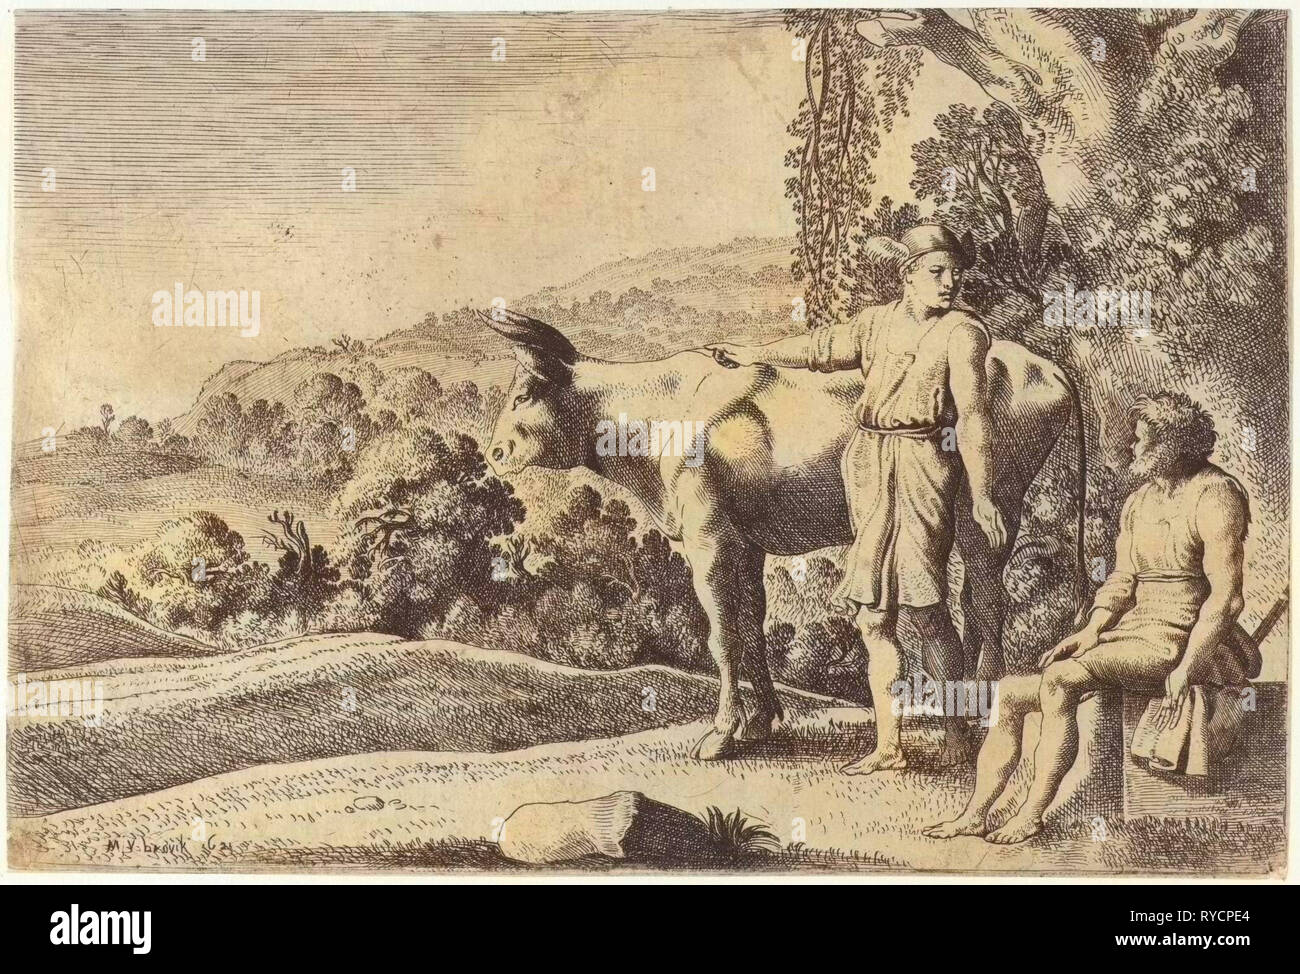 Quecksilber ist sie auf die Kuh Io und sieht bei Argus, die auf einen Steinblock sitzt, Szene aus Ovids Metamorphosen, Met. I, 679-688, drucken Teekocher: Moyses van Wtenbrouck (auf Objekt erwähnt), Dating 1621 Stockfoto